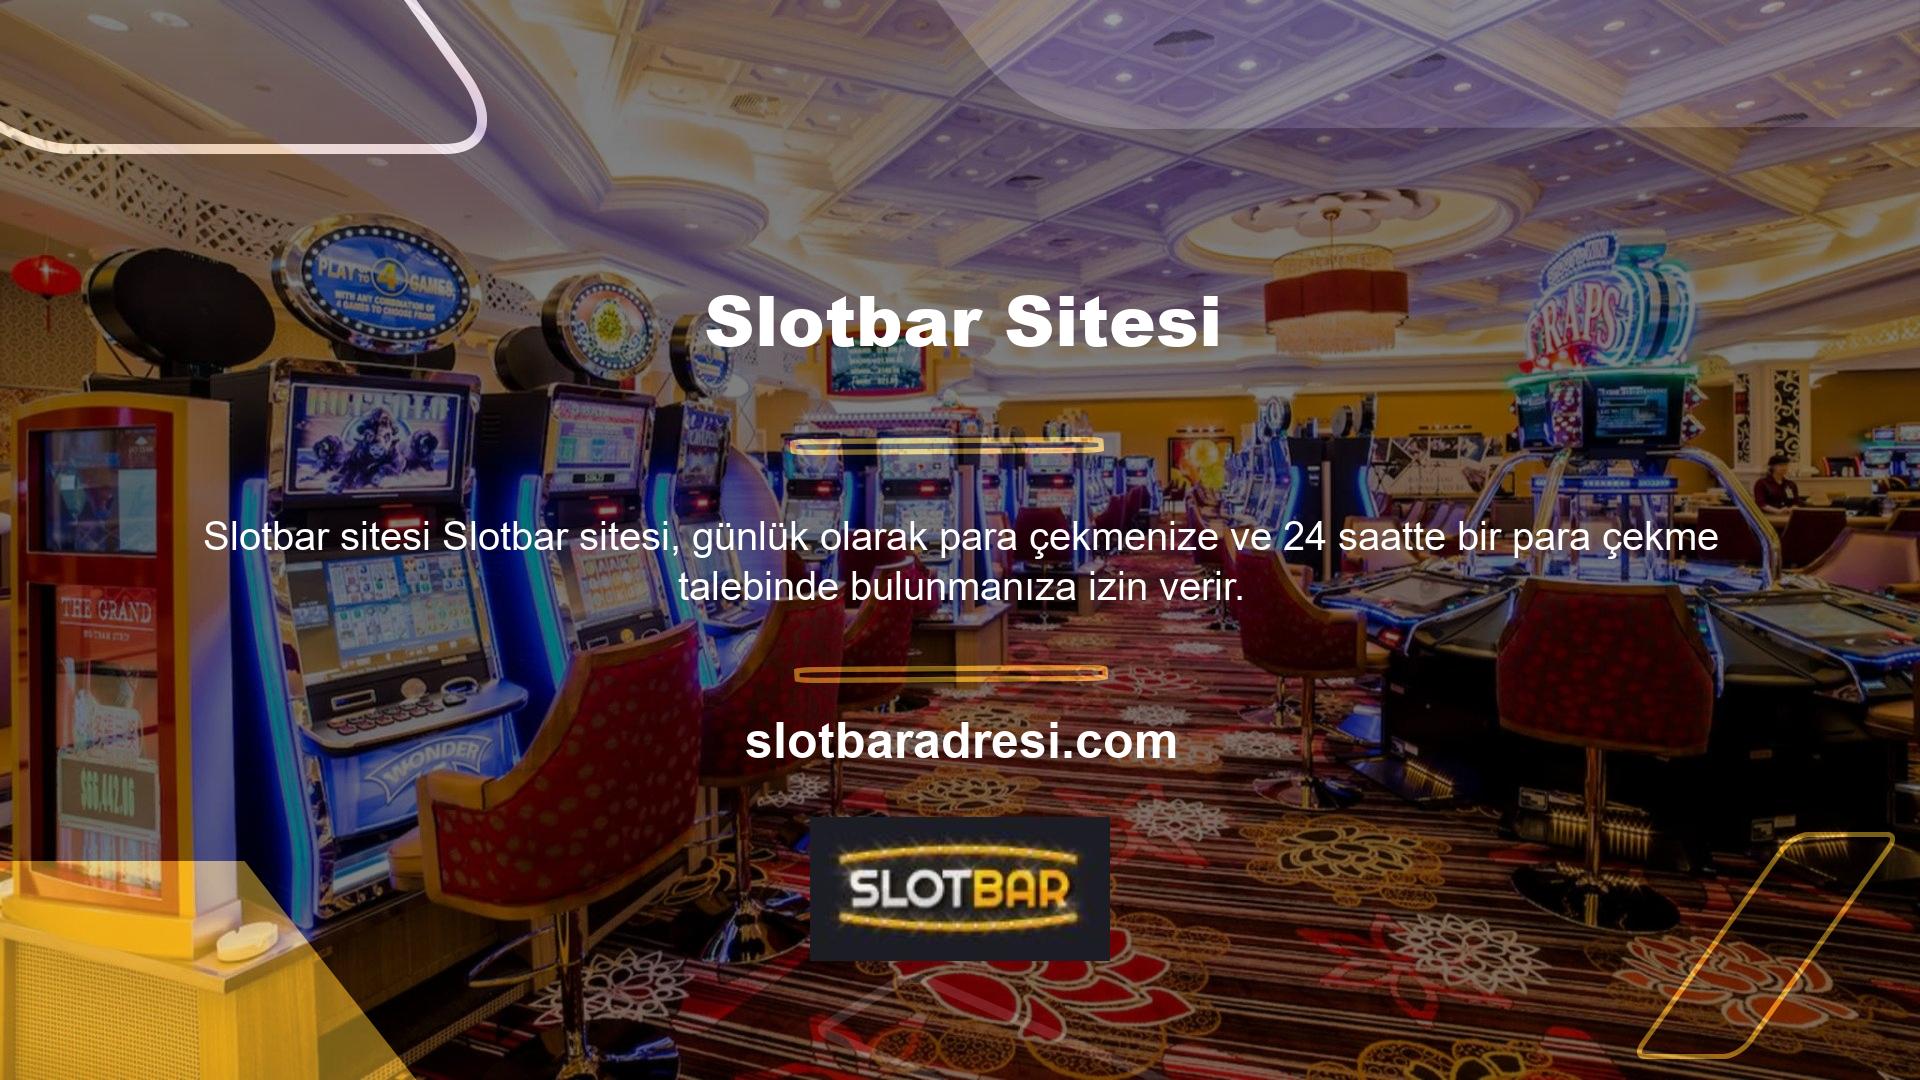 Slotbar ayrıca 7/24 canlı destek hattı kurmuştur